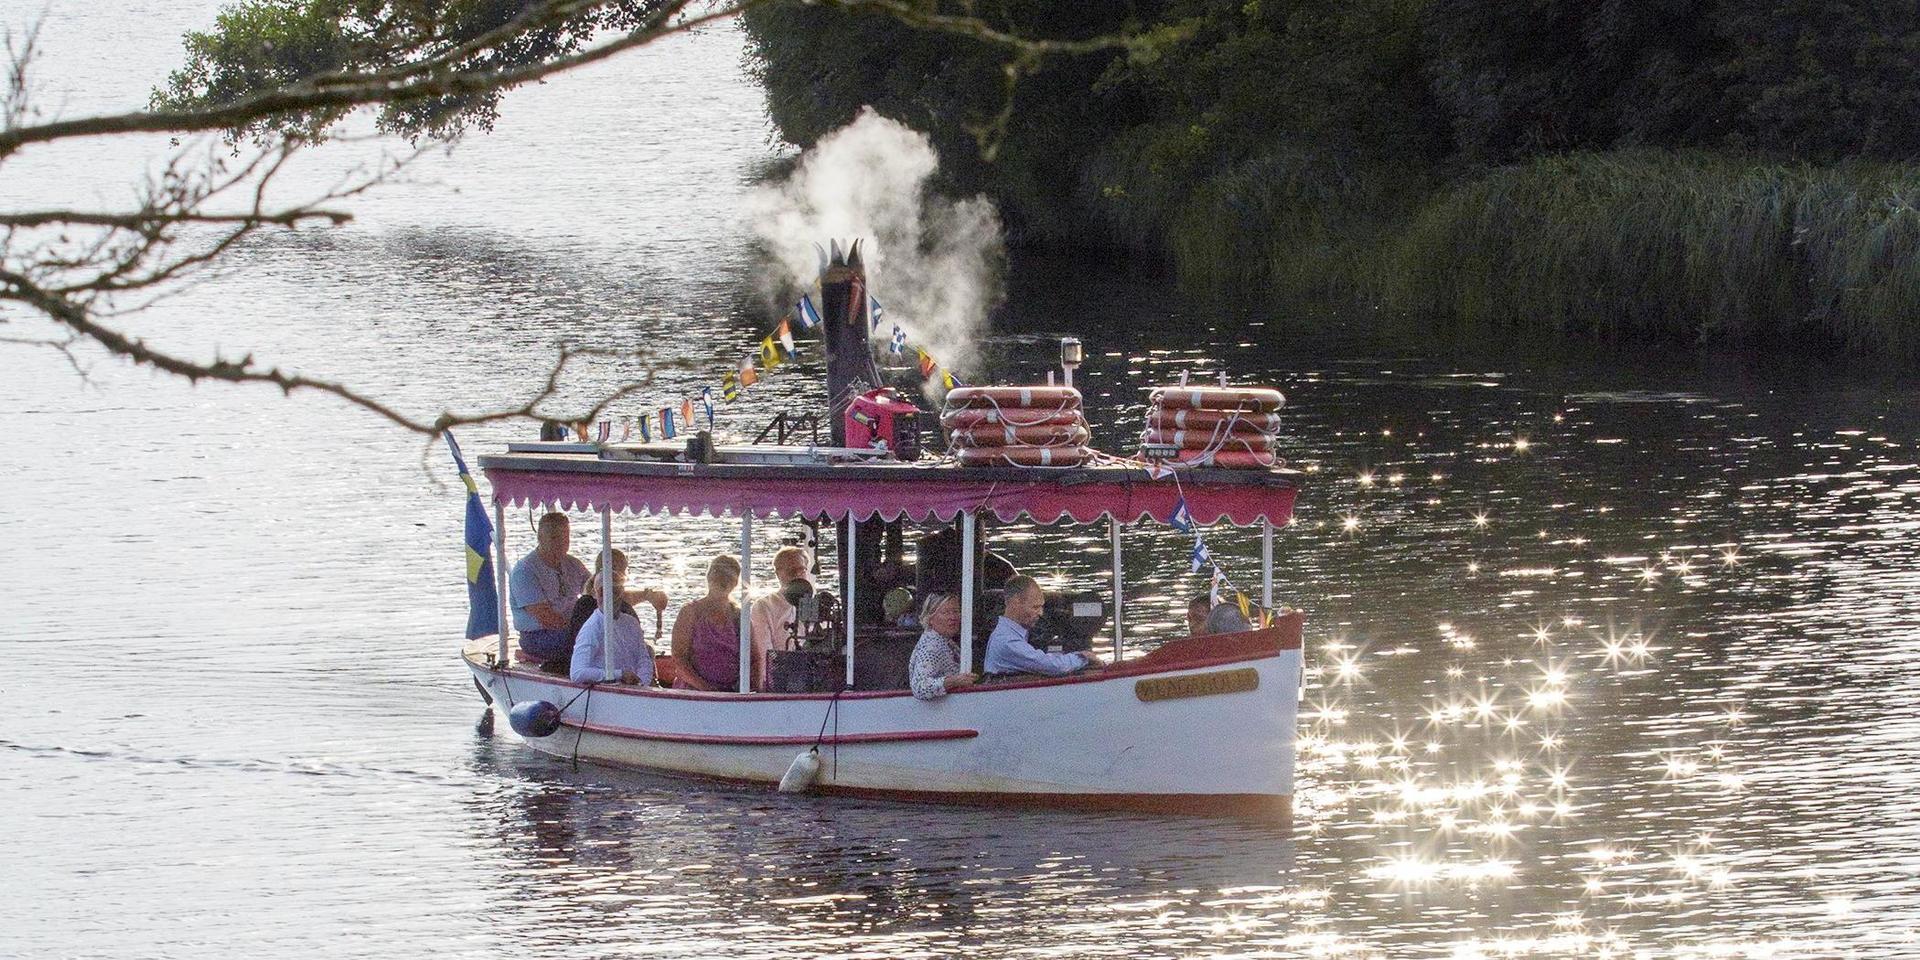 Ångbåten S/S Lagaholm under festligheter 2018. Sedan hösten 2019 förvaras båten på land.